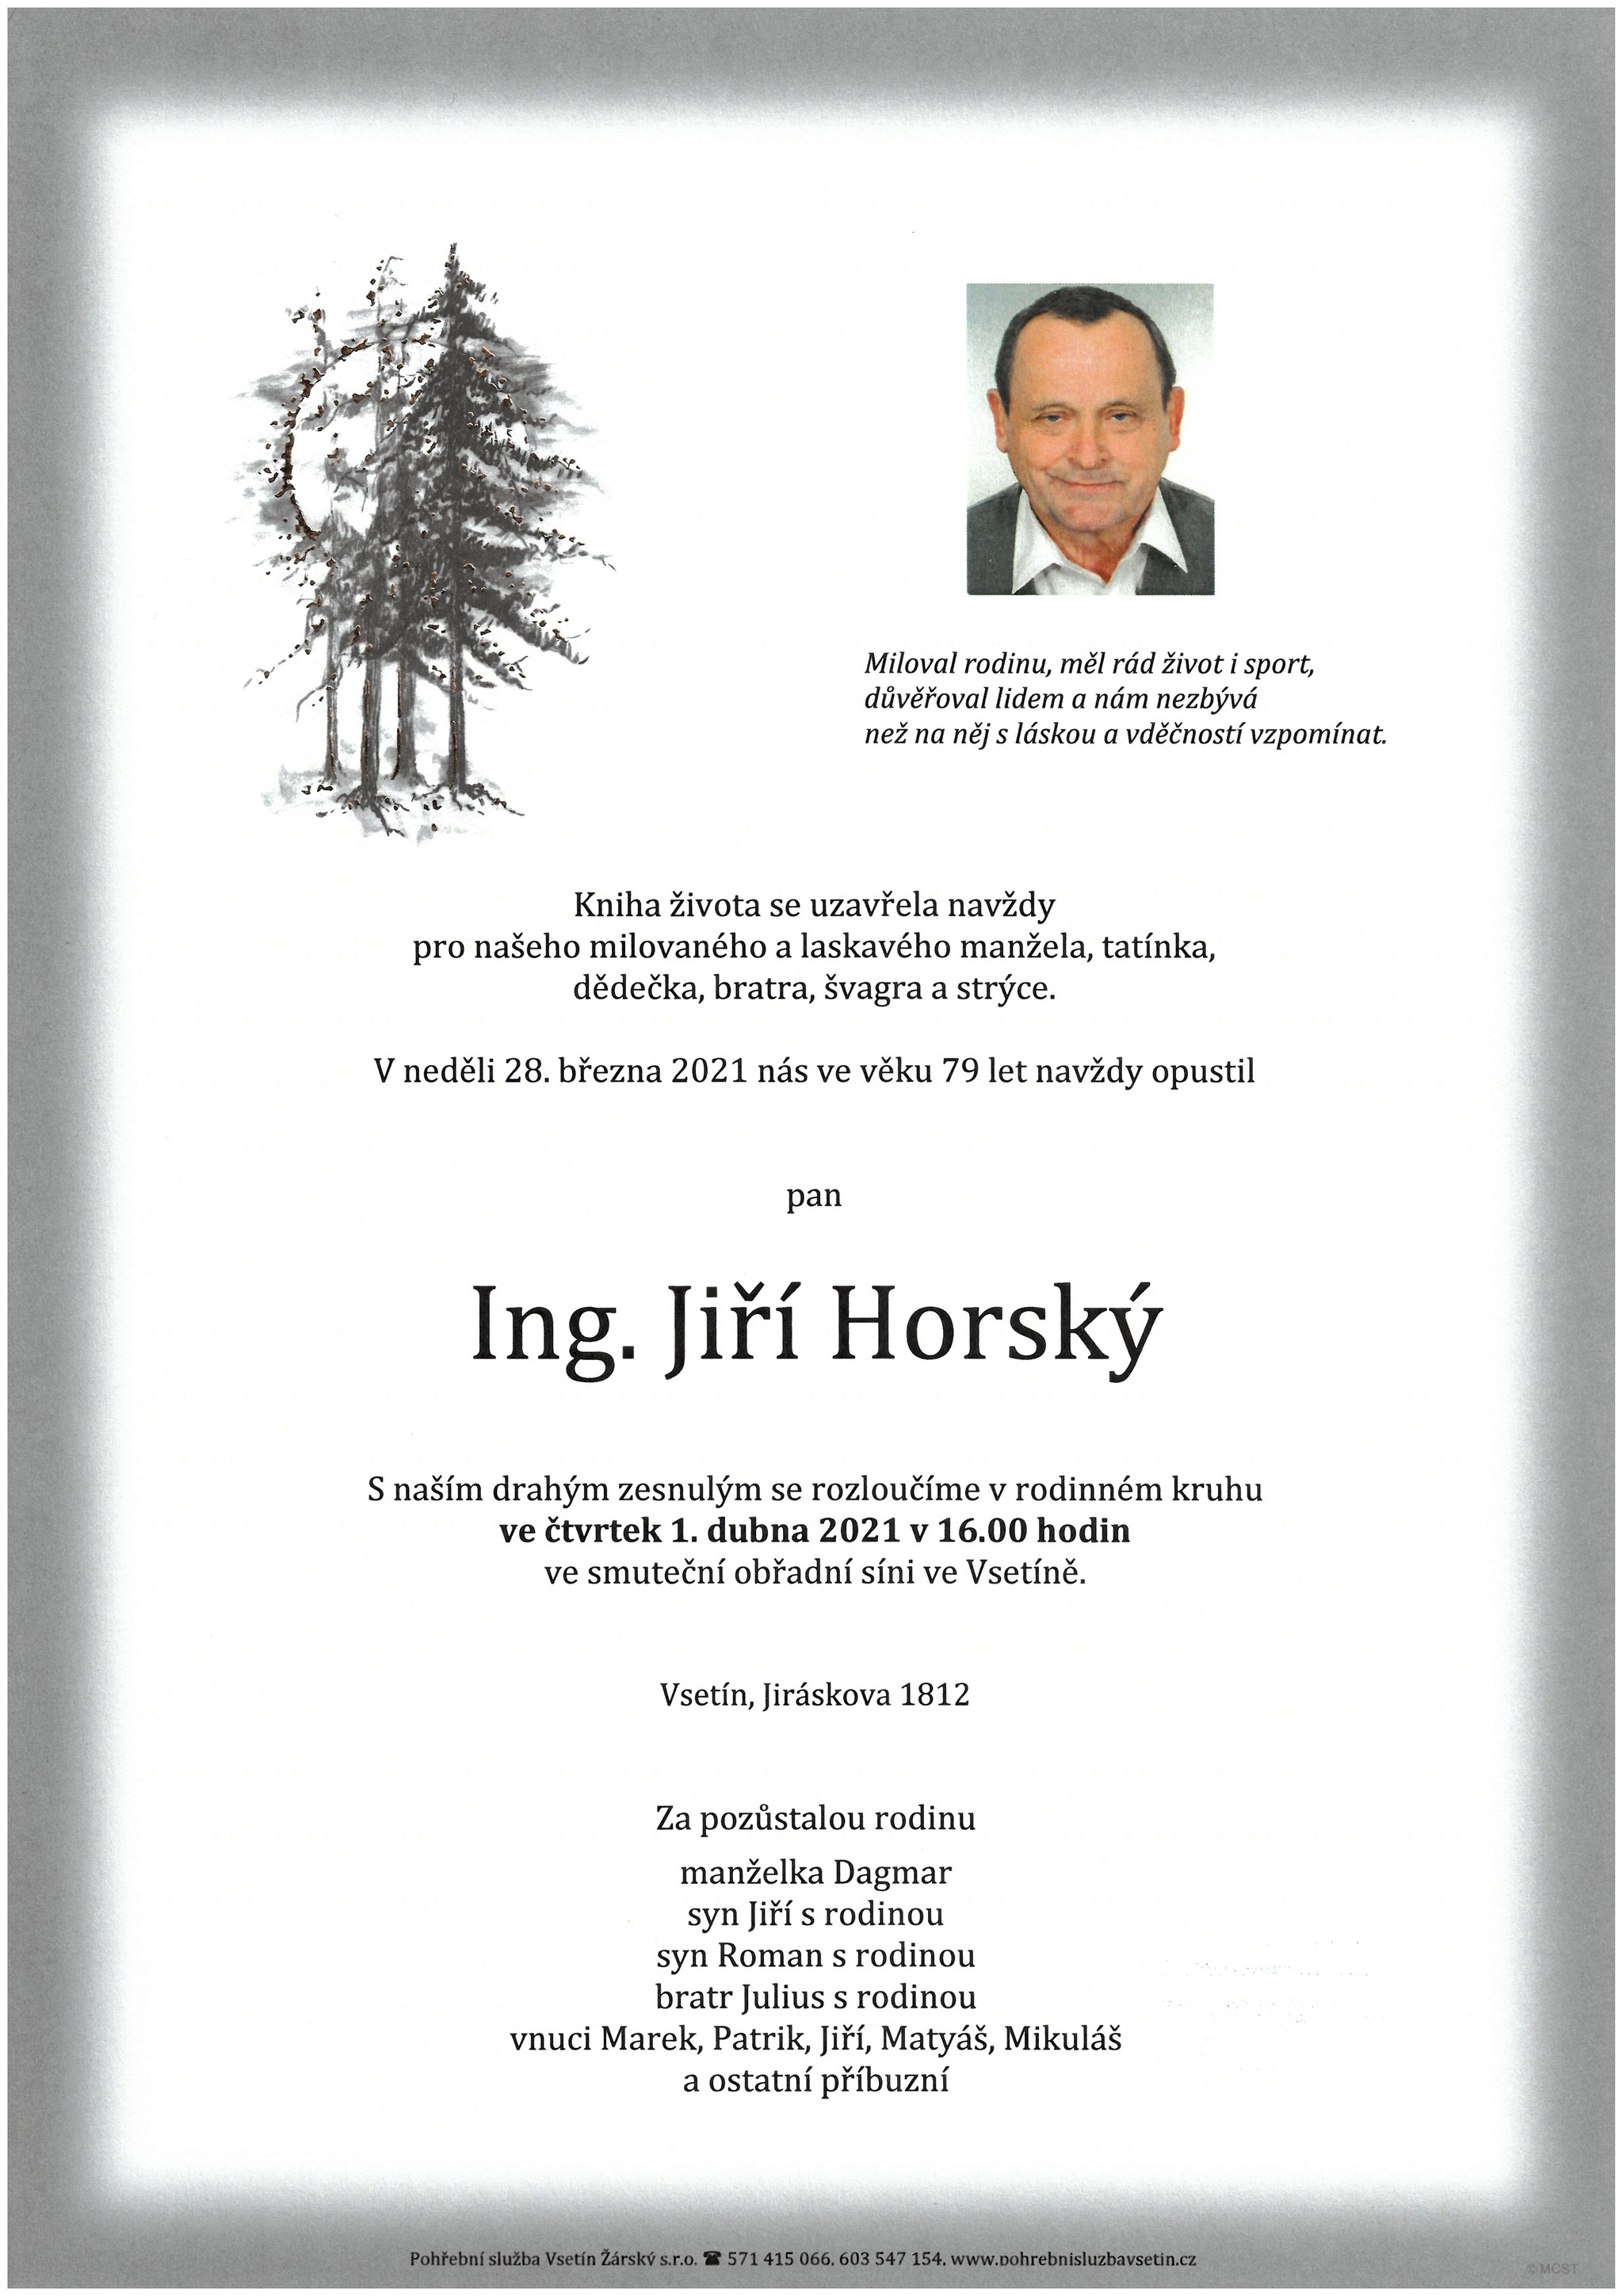 Ing. Jiří Horský